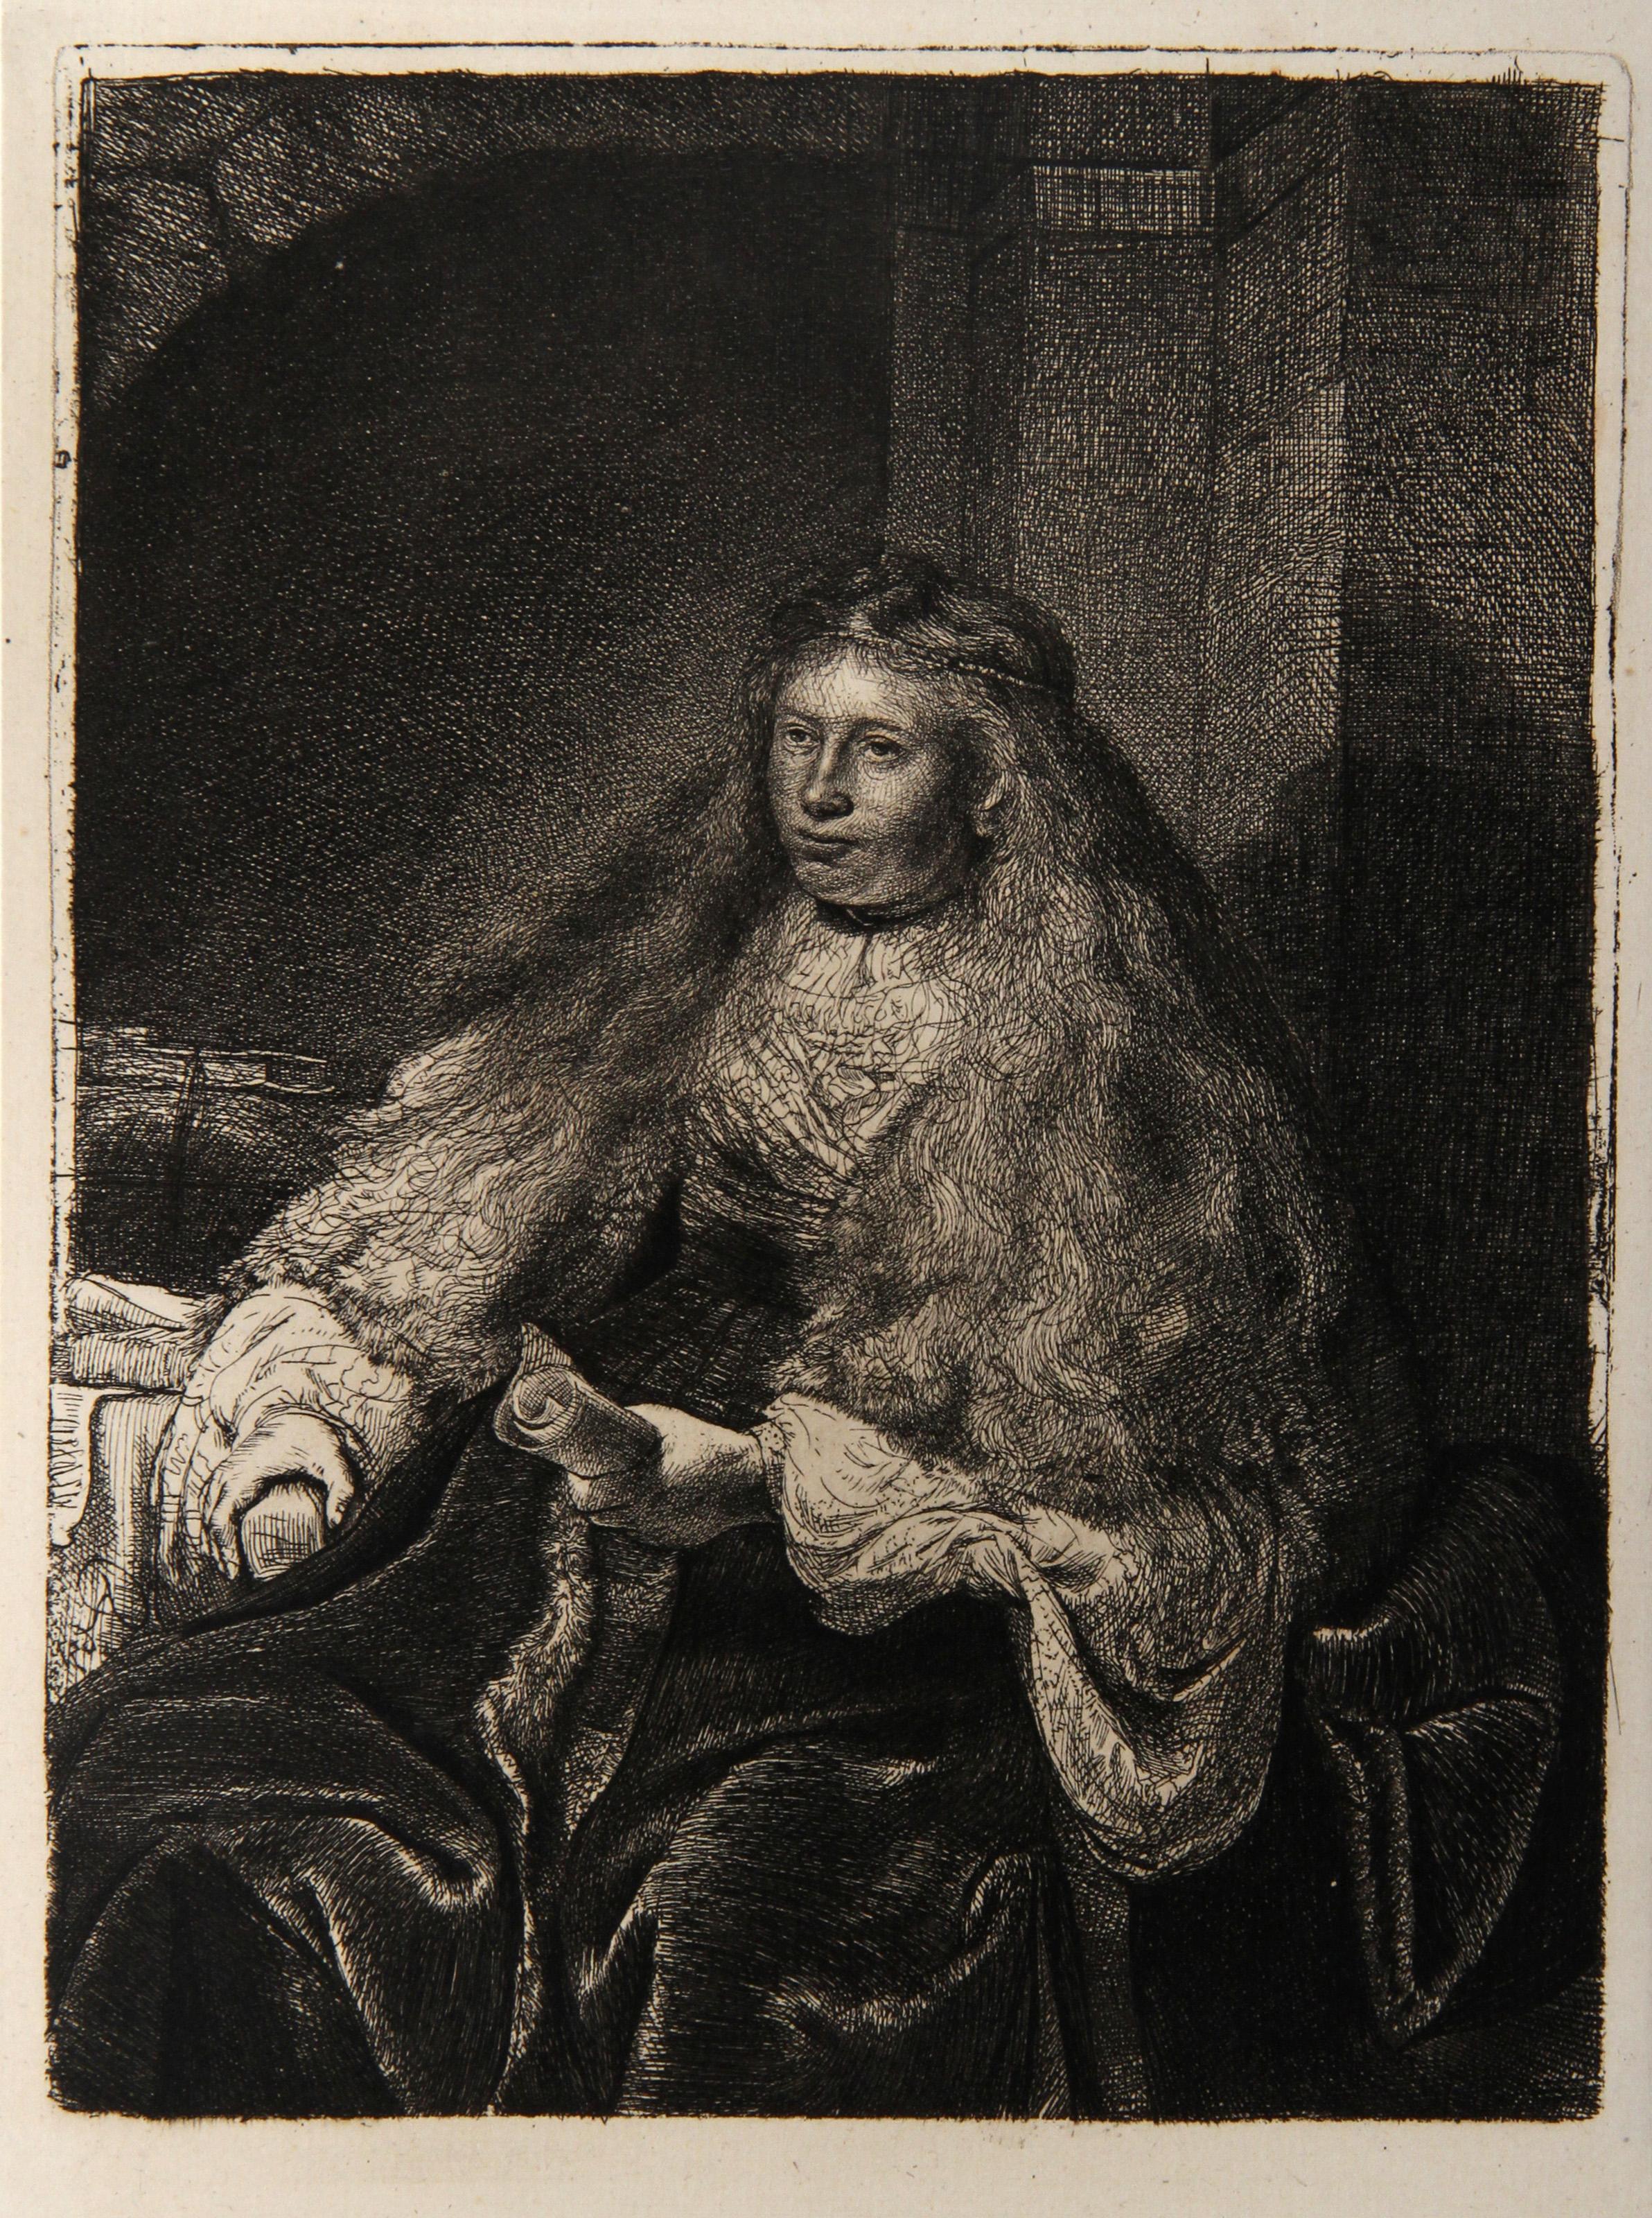 Künstler: Rembrandt van Rijn, nach Amand Durand, Niederländer (1606 - 1669) -  Die große jüdische Braut (B340), Jahr: 1878 (von Original 1635), Medium: Heliogravüre, Größe: 8.75  x 6.5 in. (22.23  x 16,51 cm), Drucker: Amand Durand, Beschreibung: